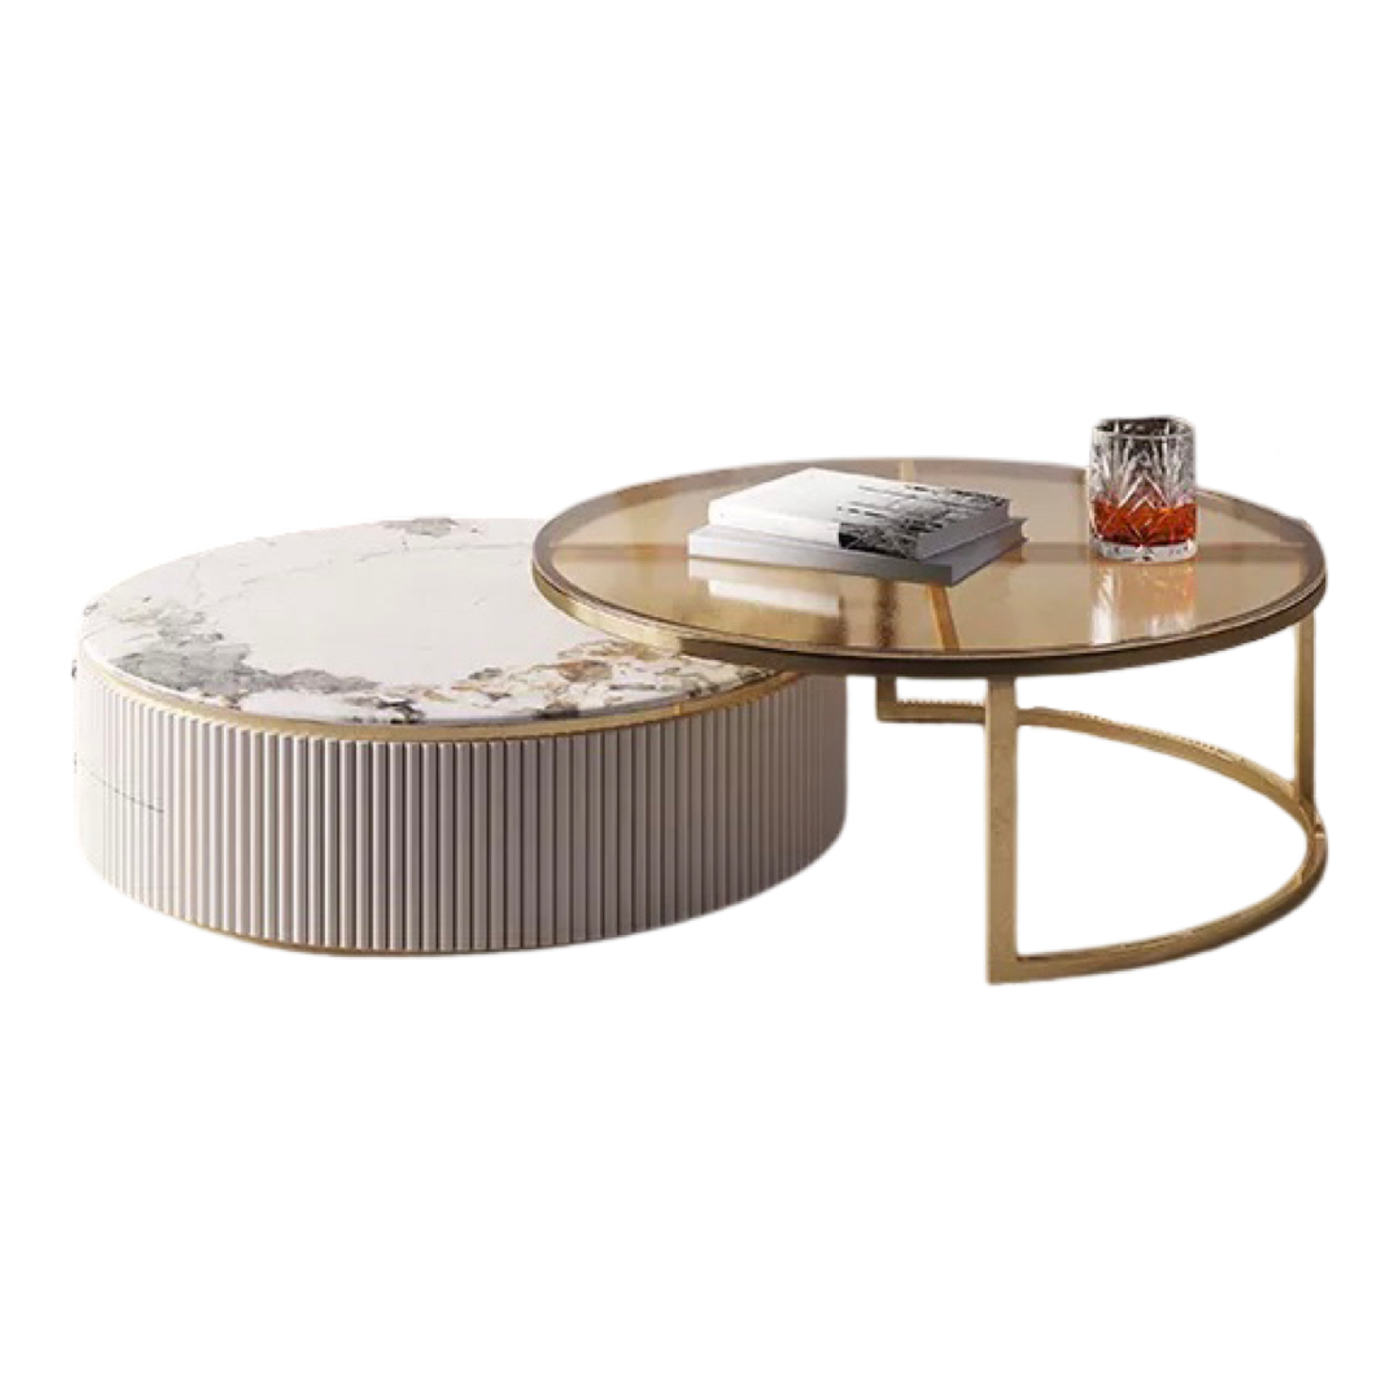 Carrington Round Coffee Table Set - Sinter Stone